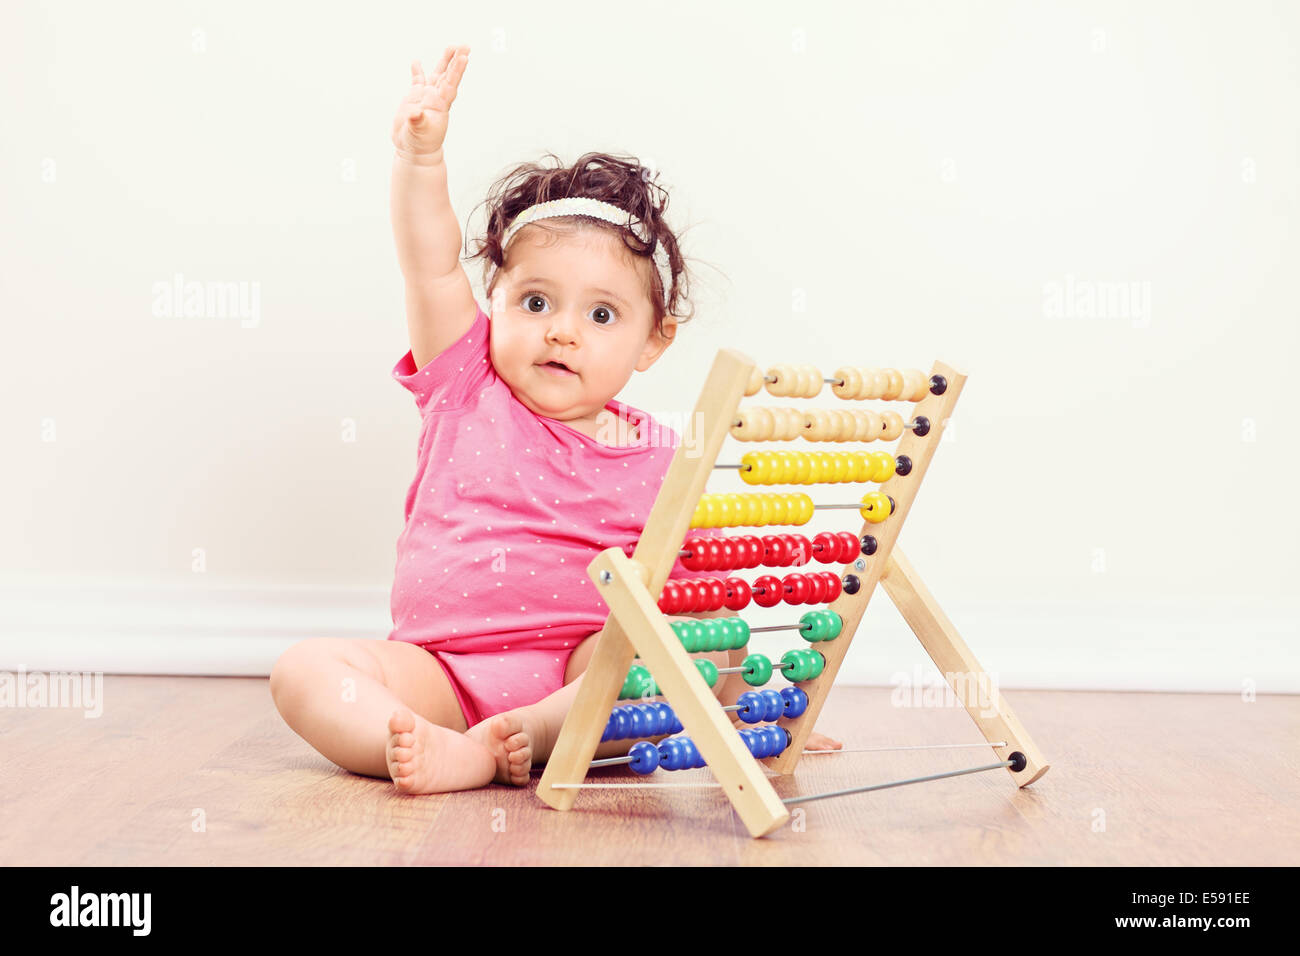 Baby ragazza seduta sul pavimento e alzando la mano con un abaco accanto a lei Foto Stock